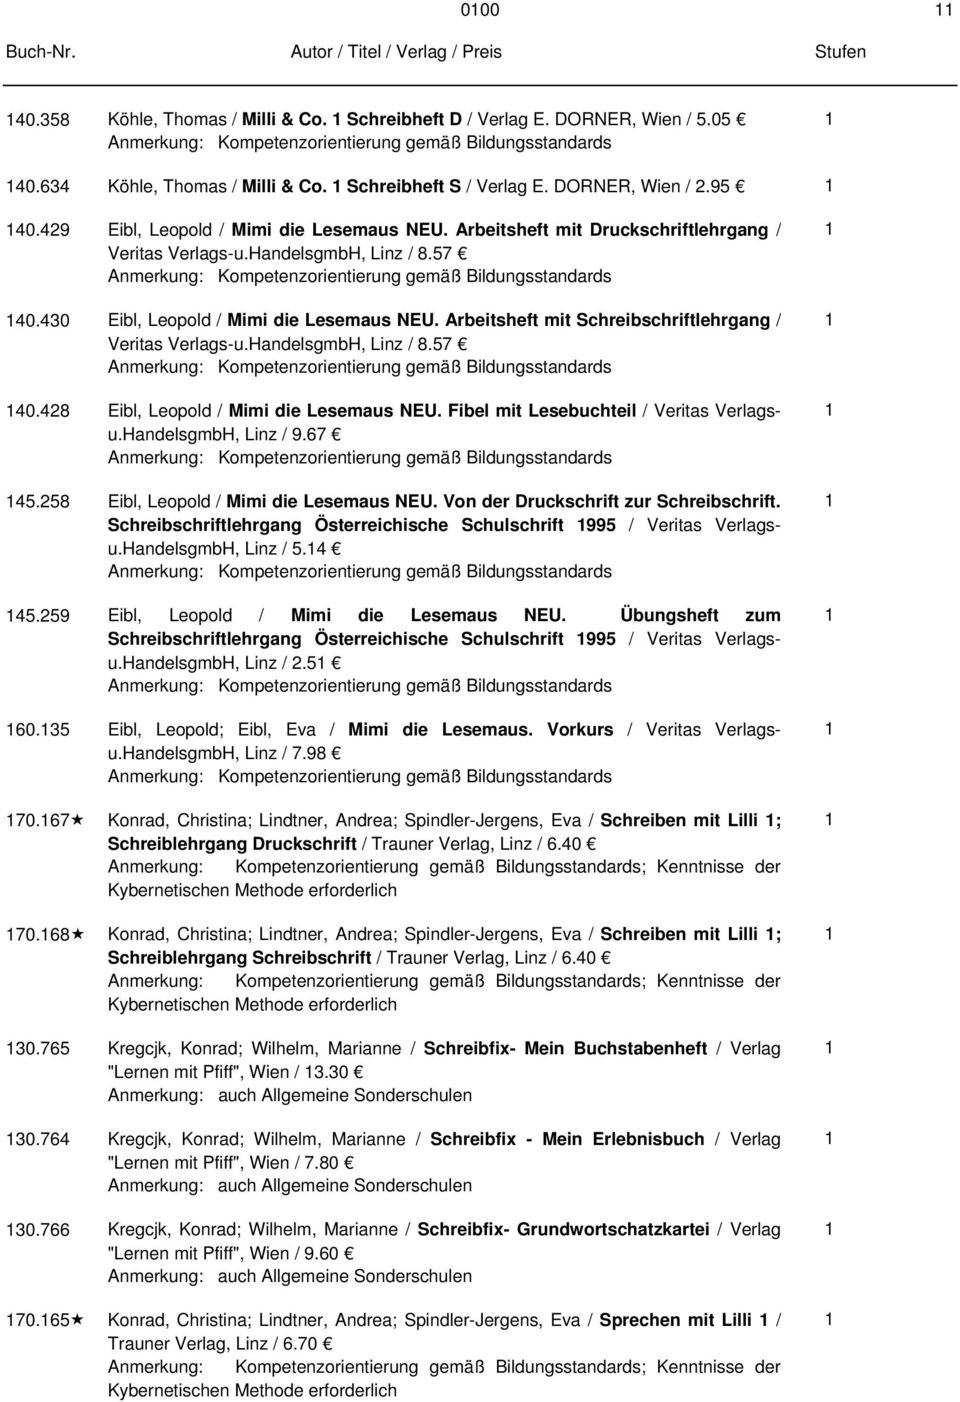 Arbeitsheft mit Schreibschriftlehrgang / Veritas Verlags-u.HandelsgmbH, Linz / 8.57 0.8 Eibl, Leopold / Mimi die Lesemaus NEU. Fibel mit Lesebuchteil / Veritas Verlagsu.HandelsgmbH, Linz / 9.67 5.